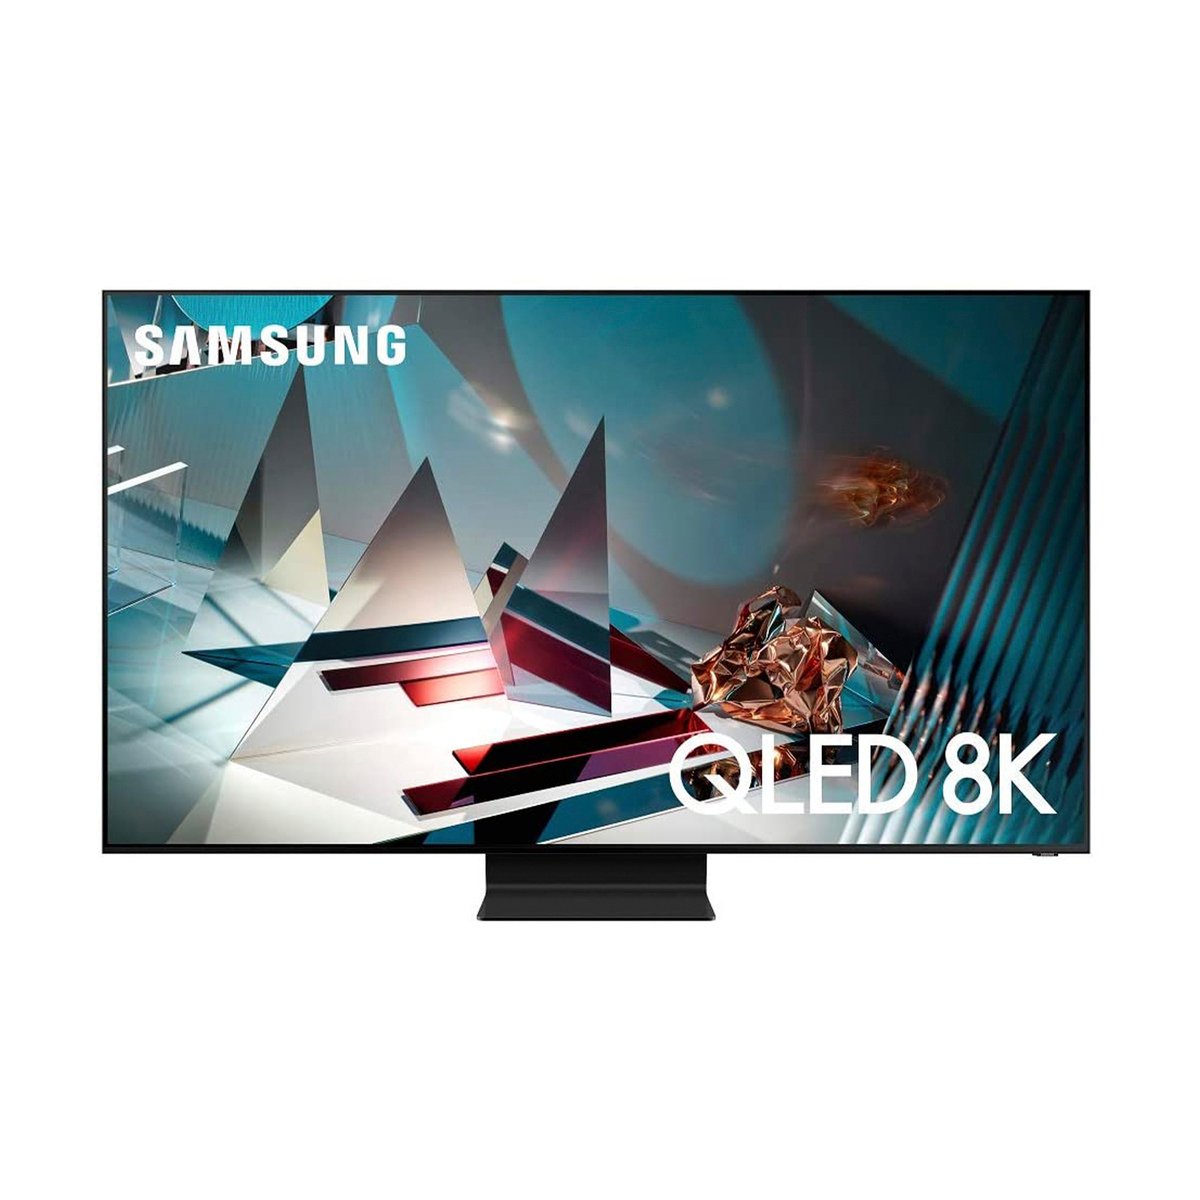 Samsung 82" Q800T QLED 8K HDR Smart TV (2020) QA82Q800TAUXQR